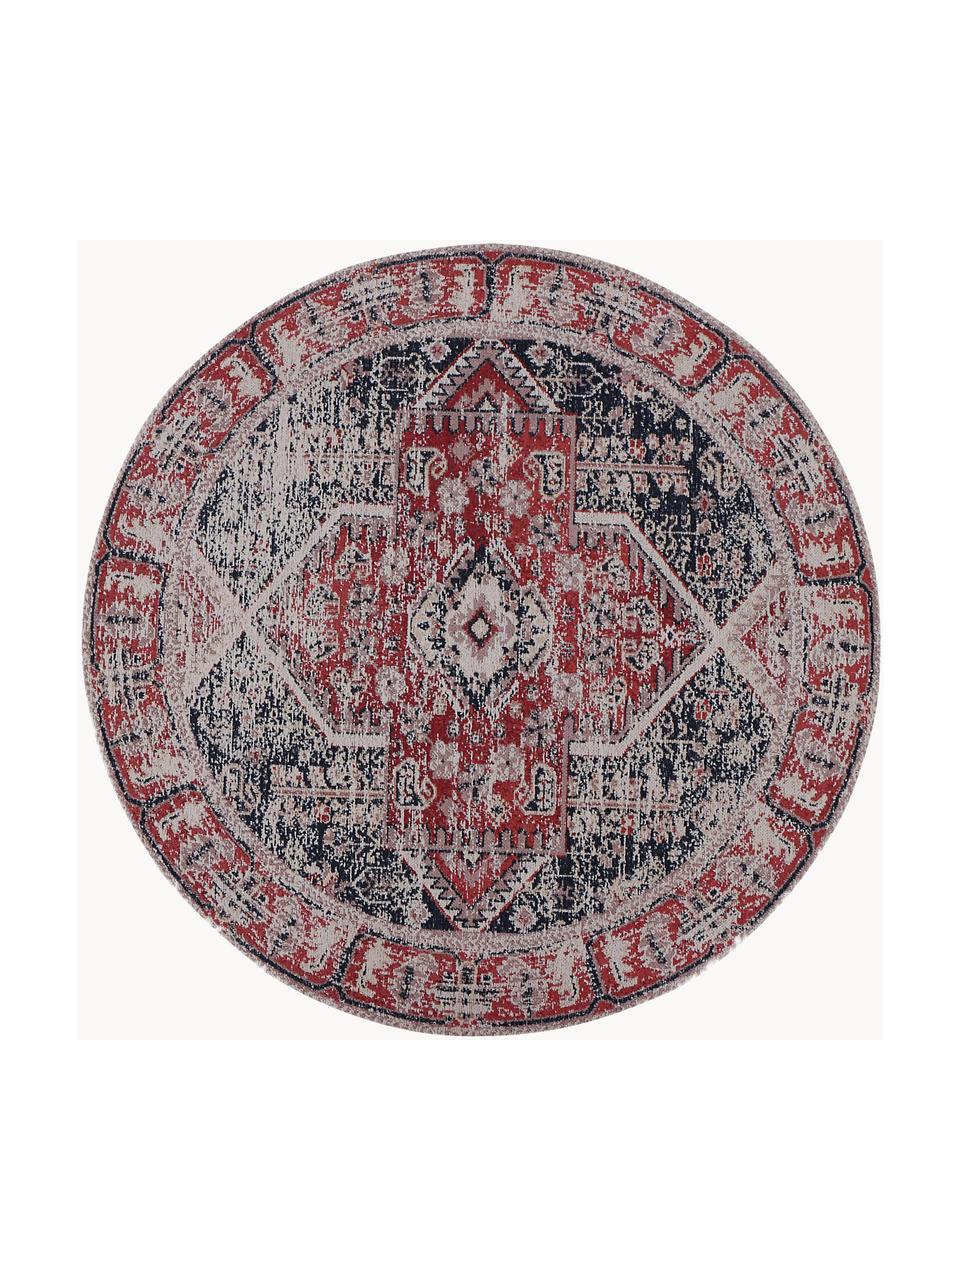 Kulatý žinylkový koberec Toulouse, Odstíny červené, Ø 200 cm (velikost L)